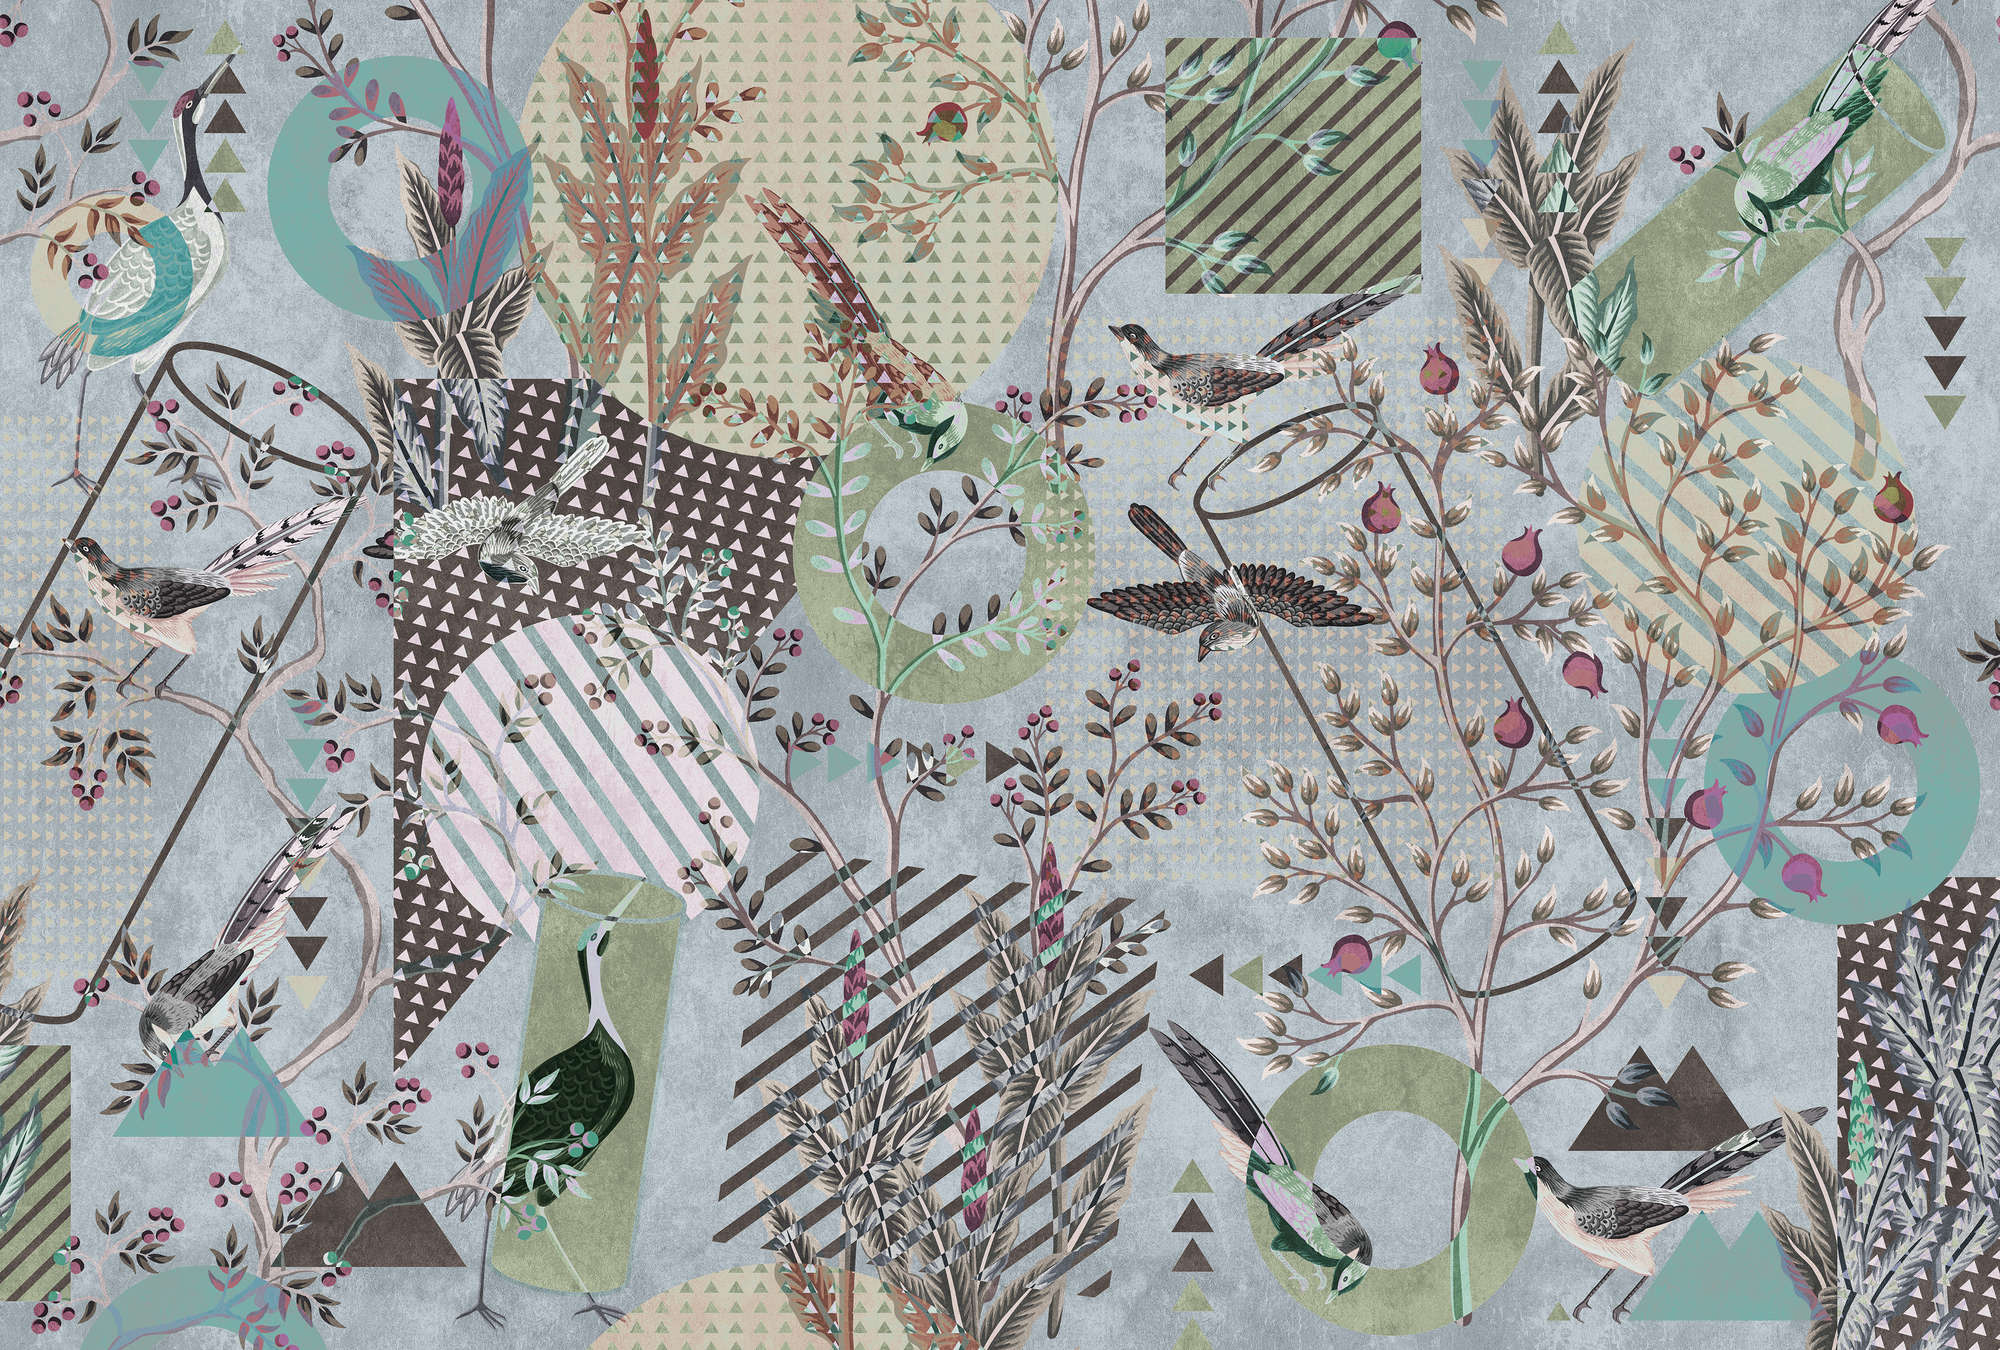             Birds Playground 2 - Birds mural collage & pattern mix
        